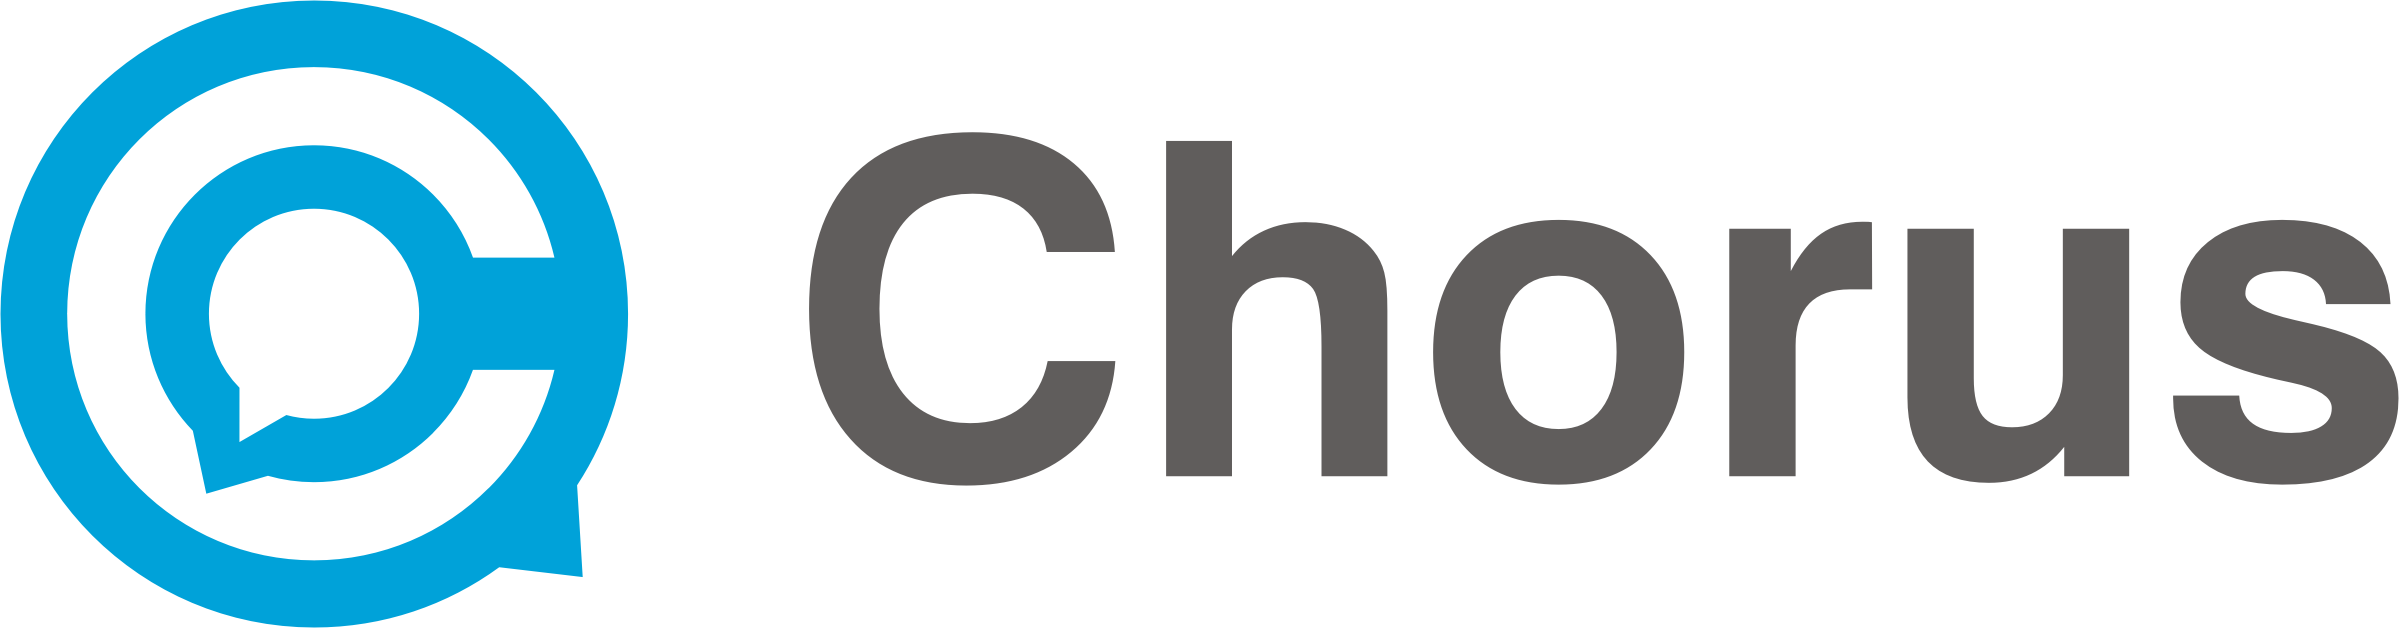 chorus logo